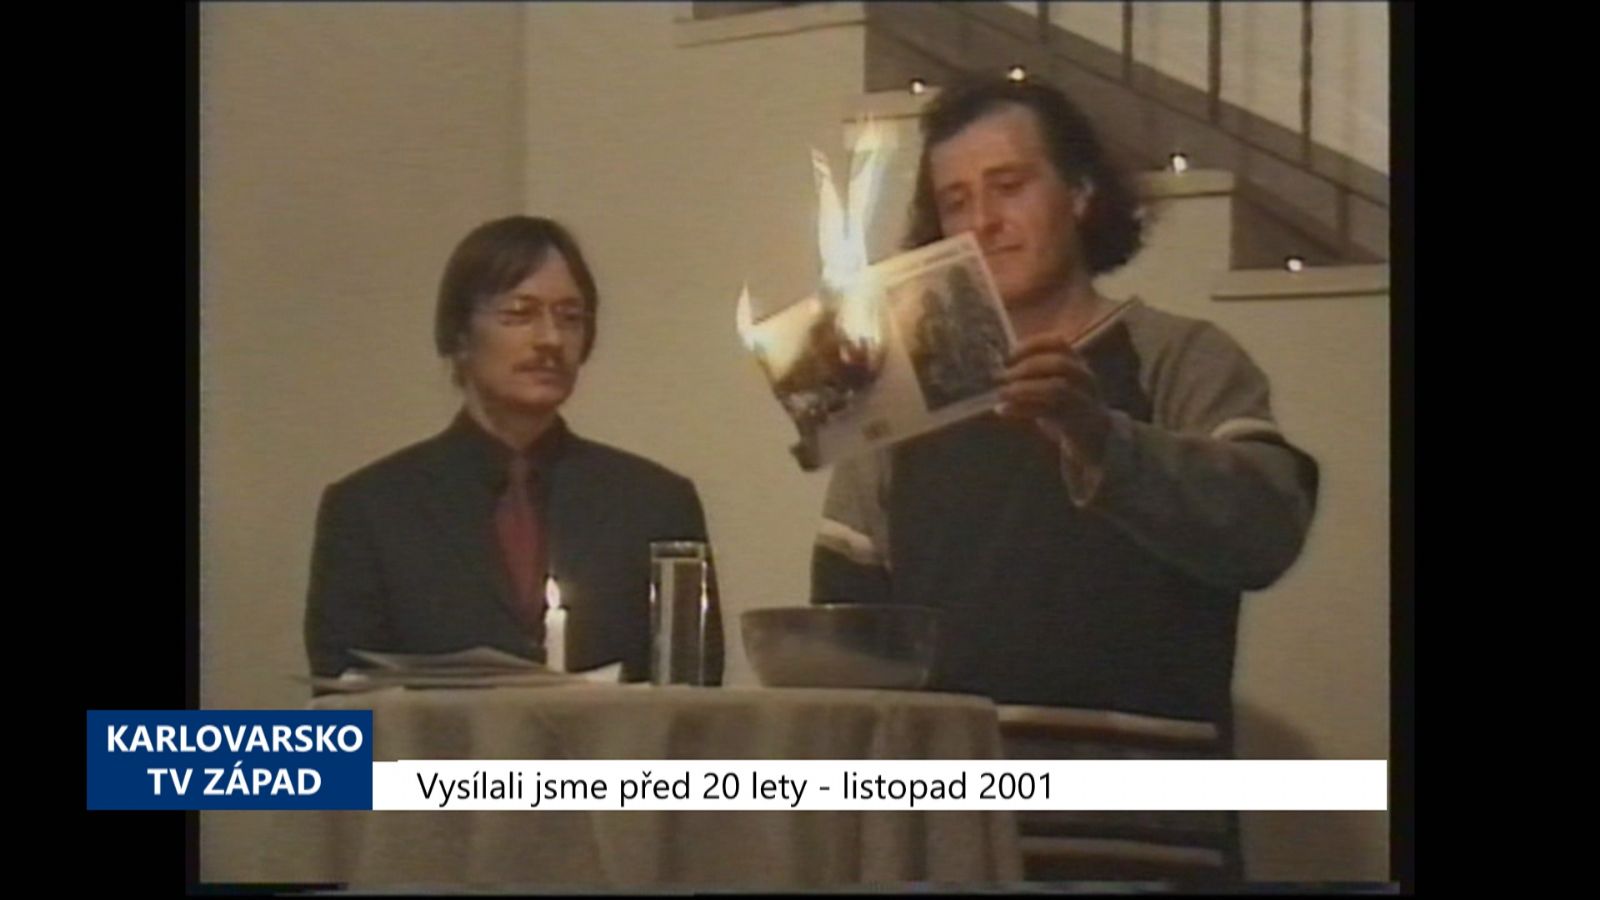 2001 – Cheb: Proběhl křest knihy Chebských pověstí (TV Západ)